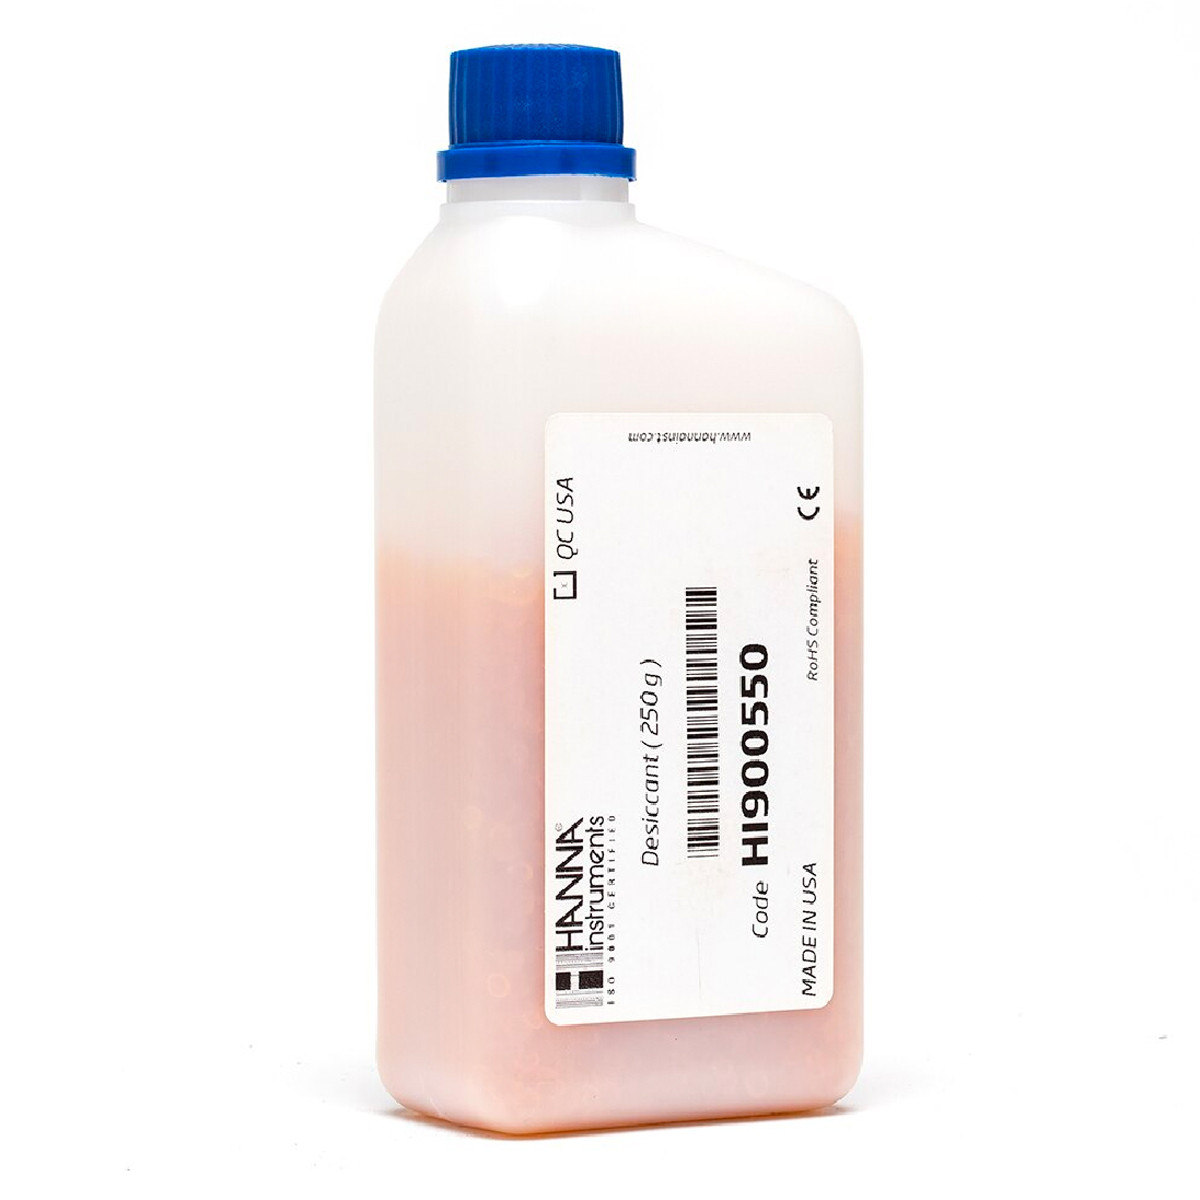 Phụ kiện cho máy chuẩn độ độ ẩm HI933-02: Chất hút ẩm silica gel HI900550, 250 gram/chai (Hàng mới 100%)